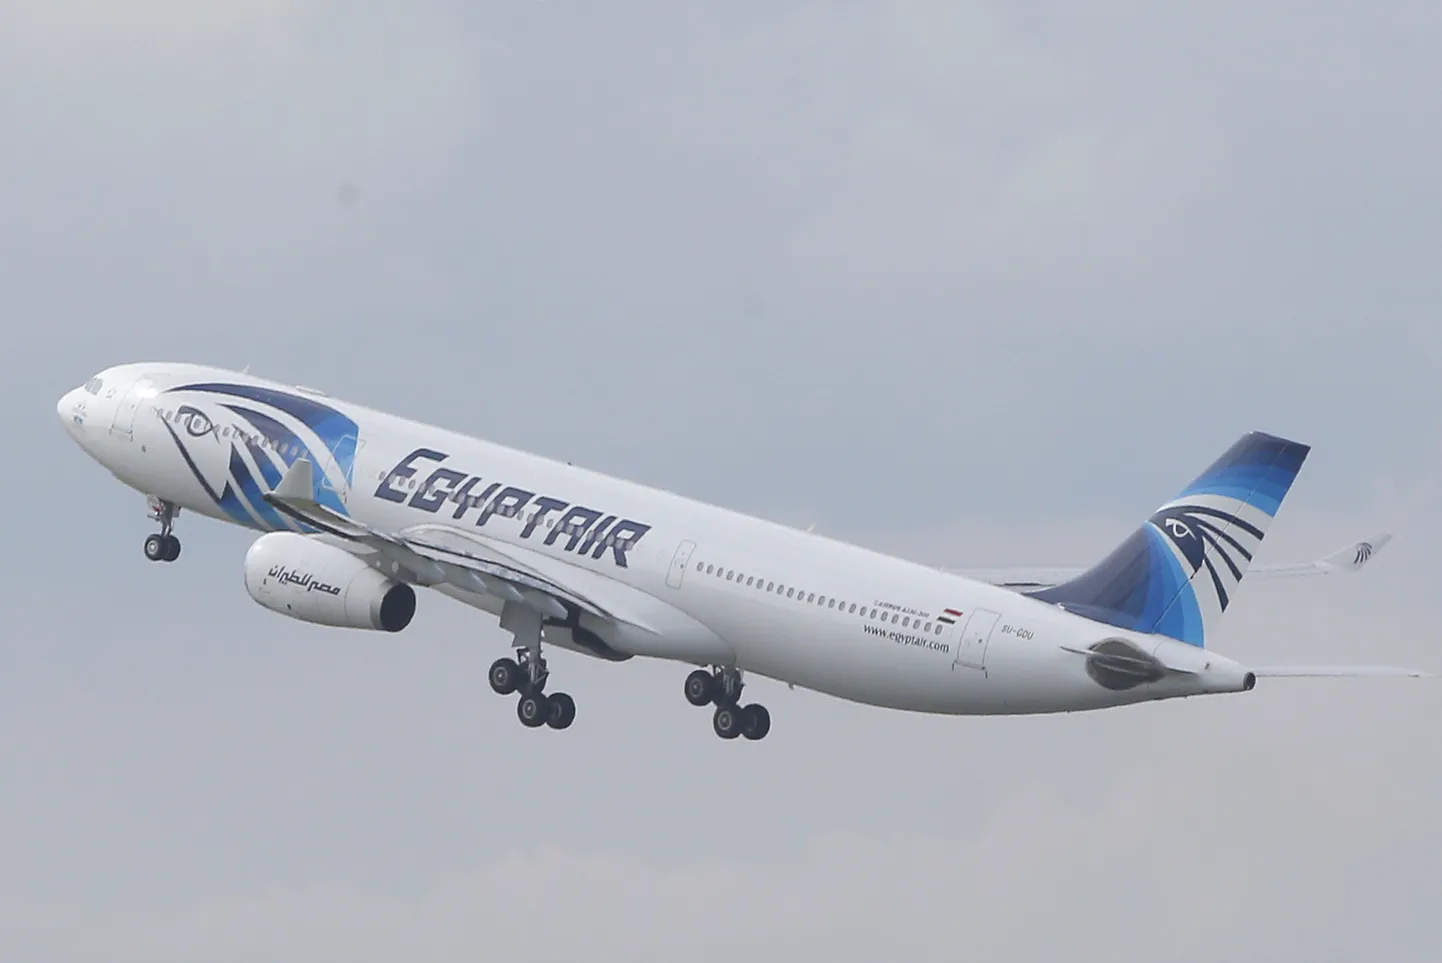 EgyptAiri lennuk õhku tõusmas